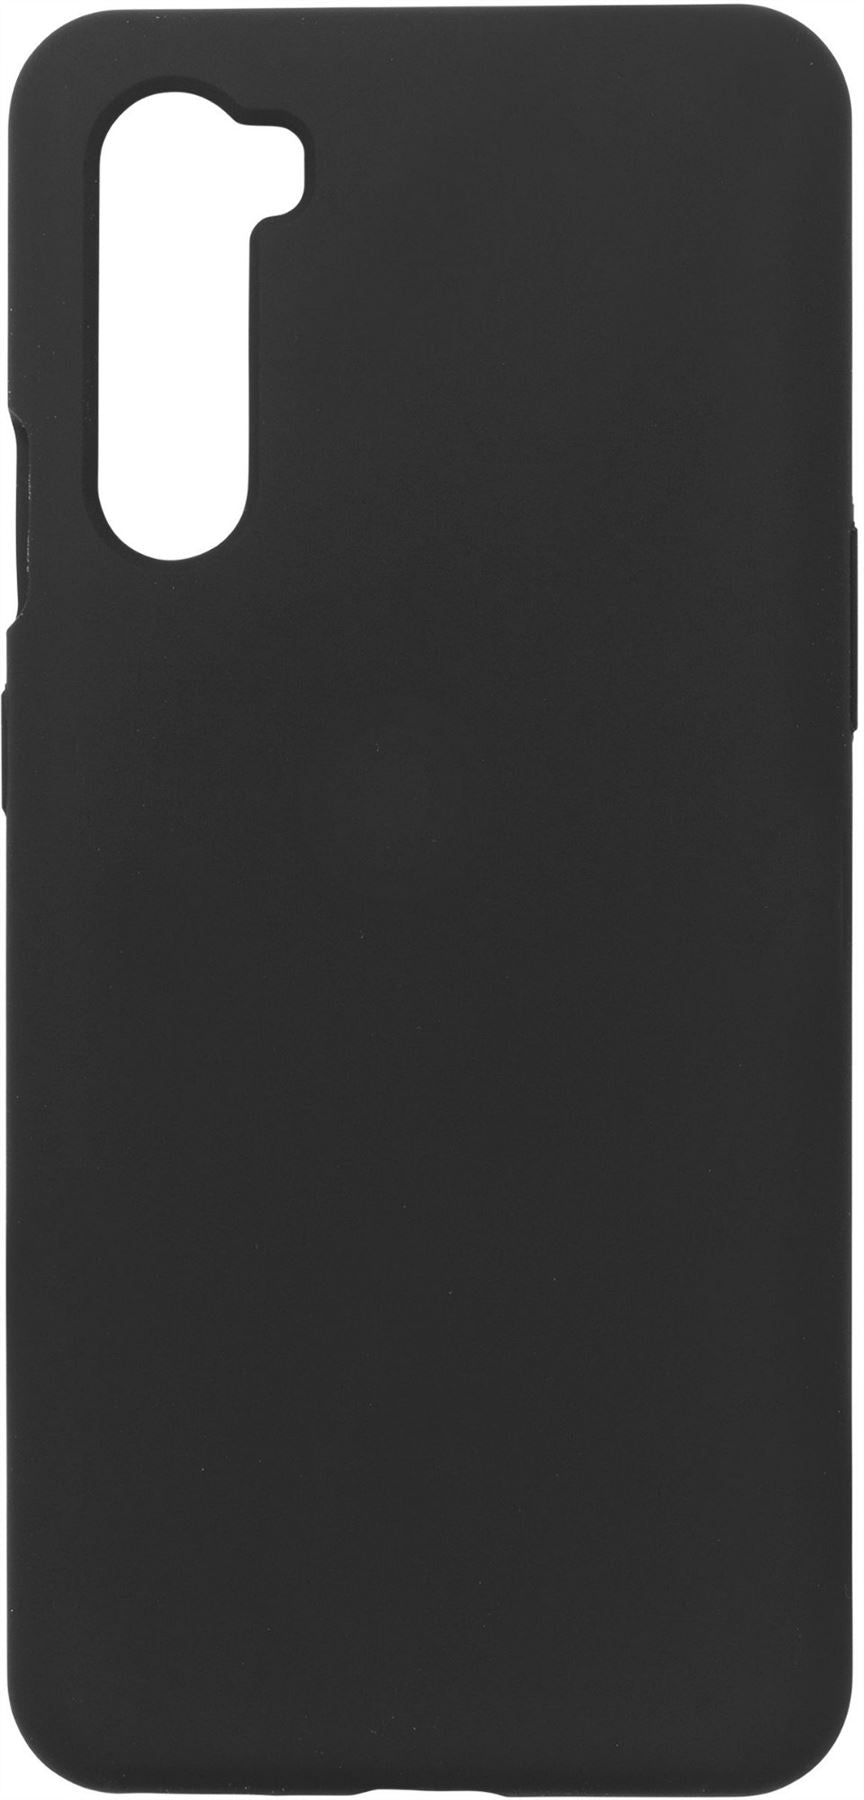 eSTUFF ES677106-BULK mobile phone case Cover Black